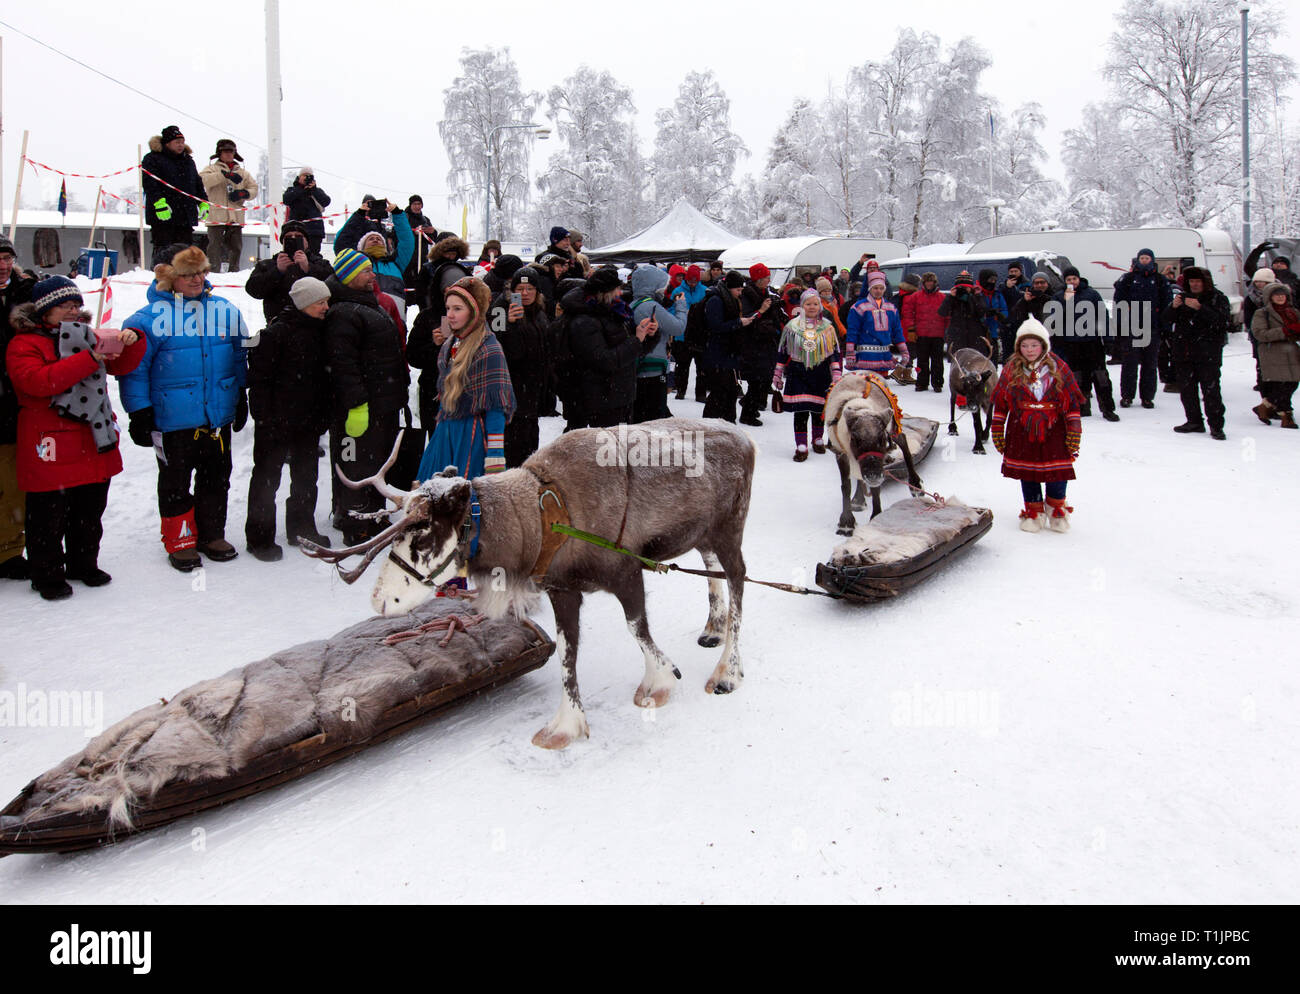 pimienta ignorancia paquete Cultura sami fotografías e imágenes de alta resolución - Página 5 - Alamy